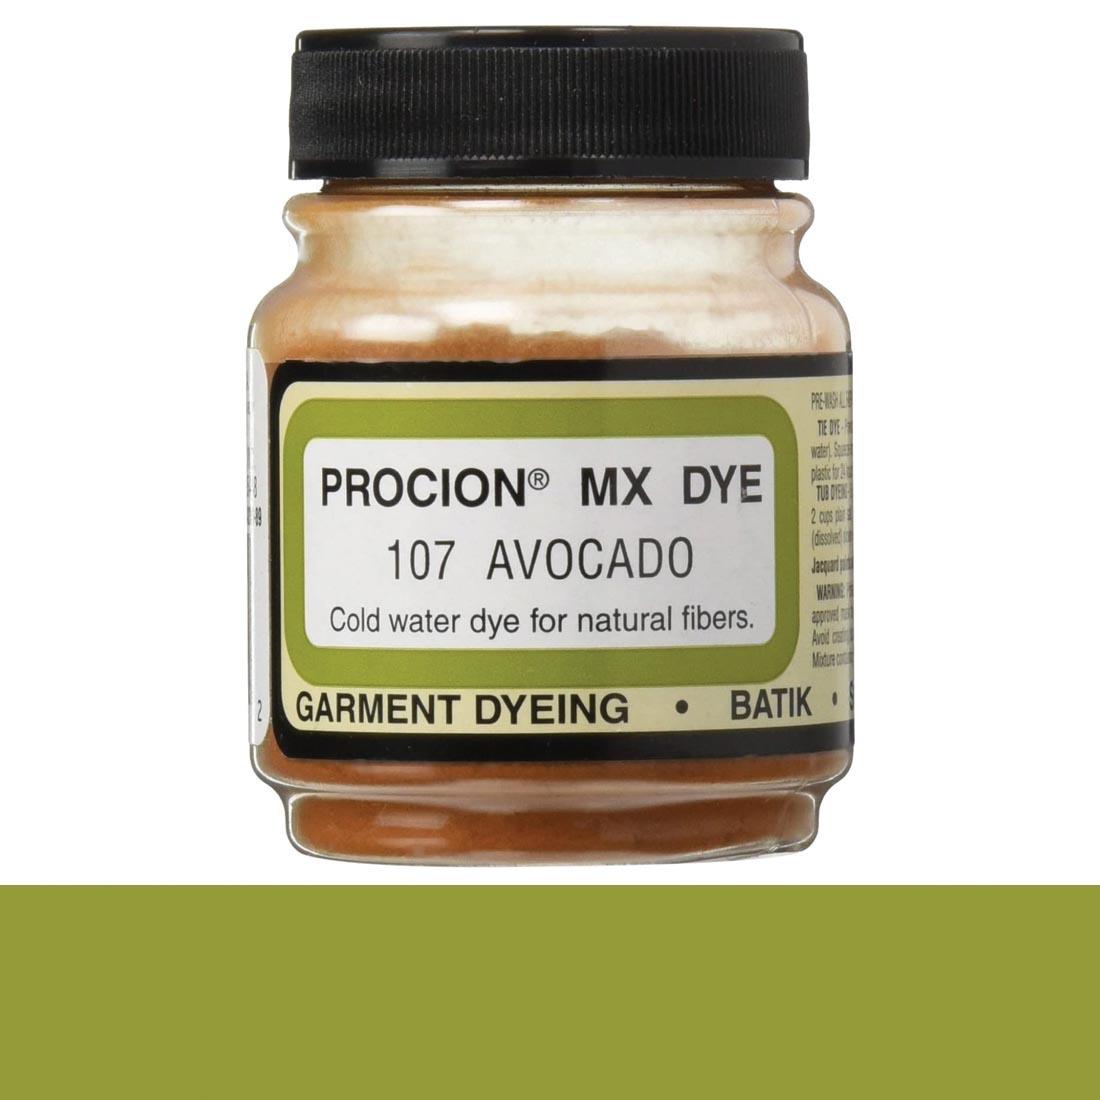 Jacquard Procion MX Dye Avocado